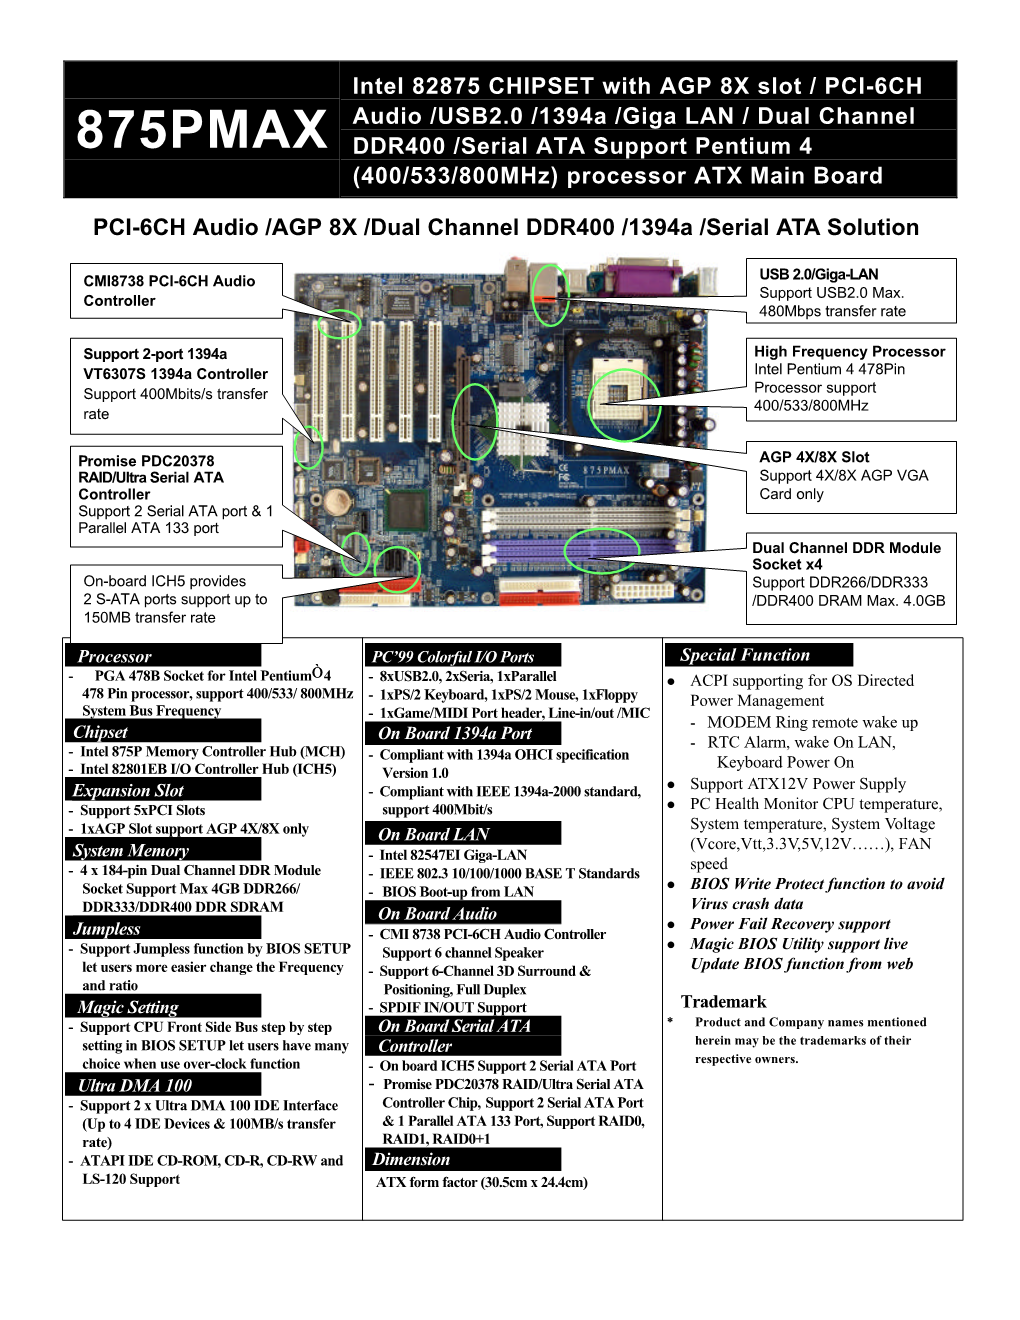 875PMAX DDR400 /Serial ATA Support Pentium 4 (400/533/800Mhz) Processor ATX Main Board